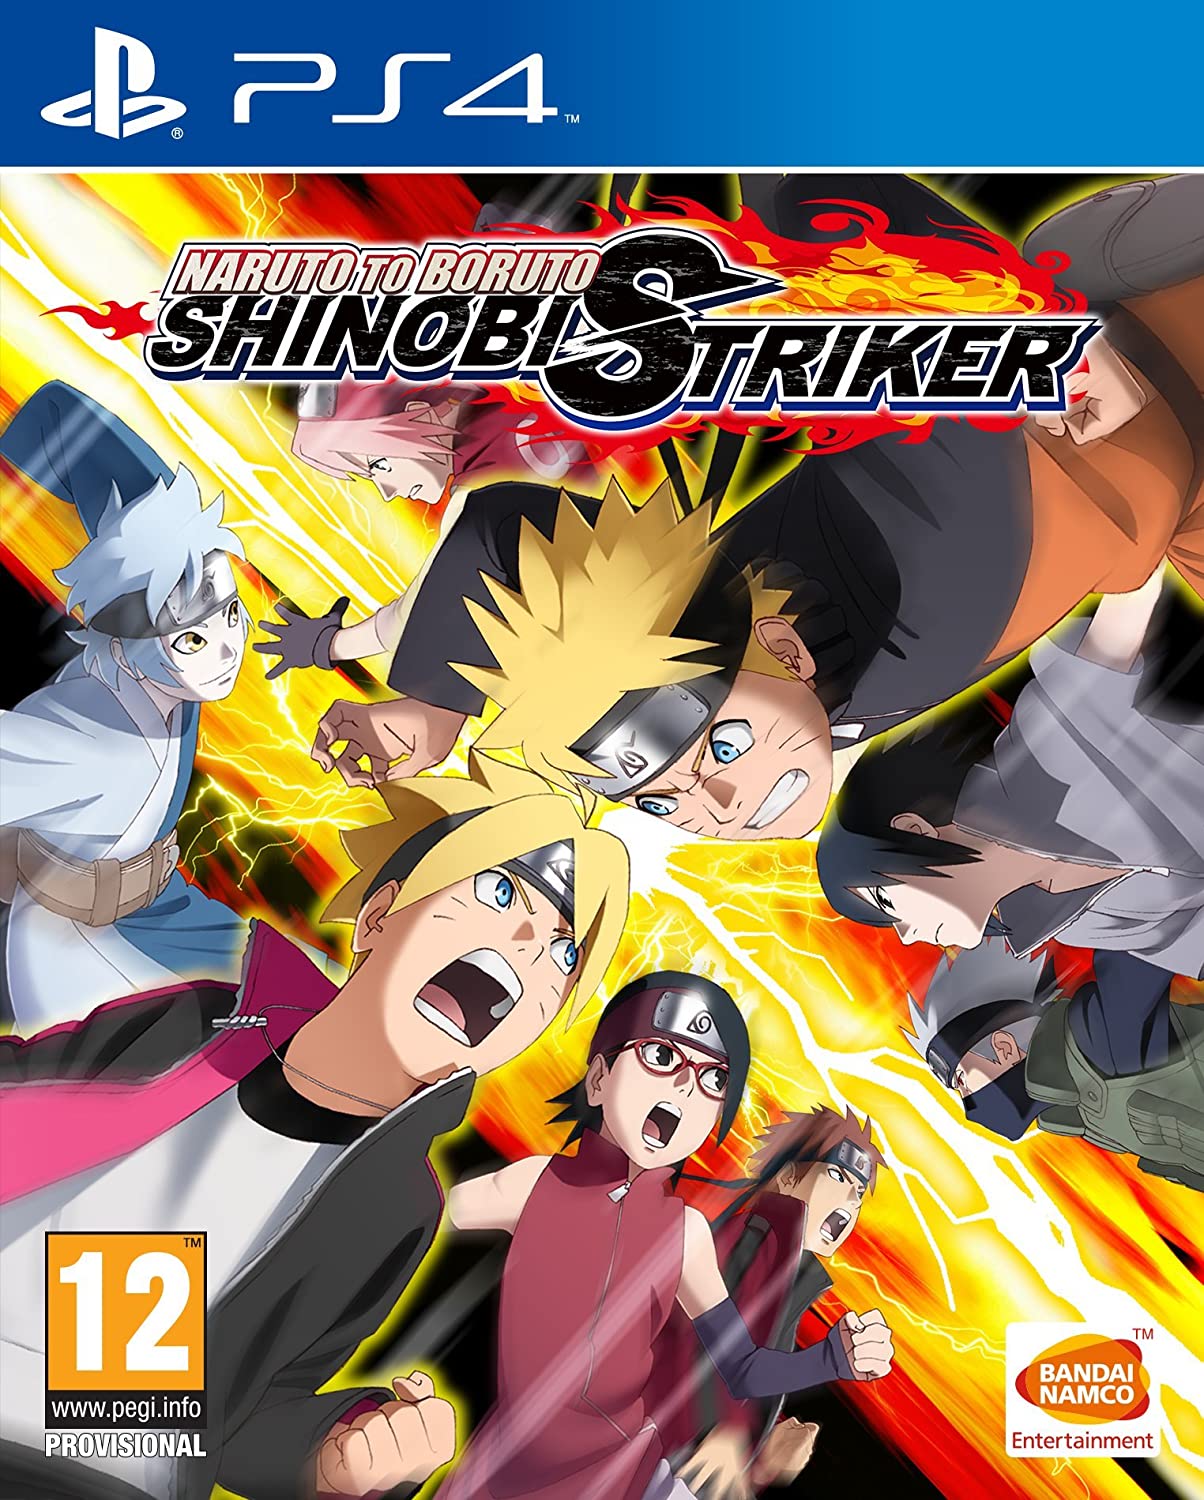 Shisui Uchiha verbindet Naruto mit Boruto: Shinobi Striker Video Game